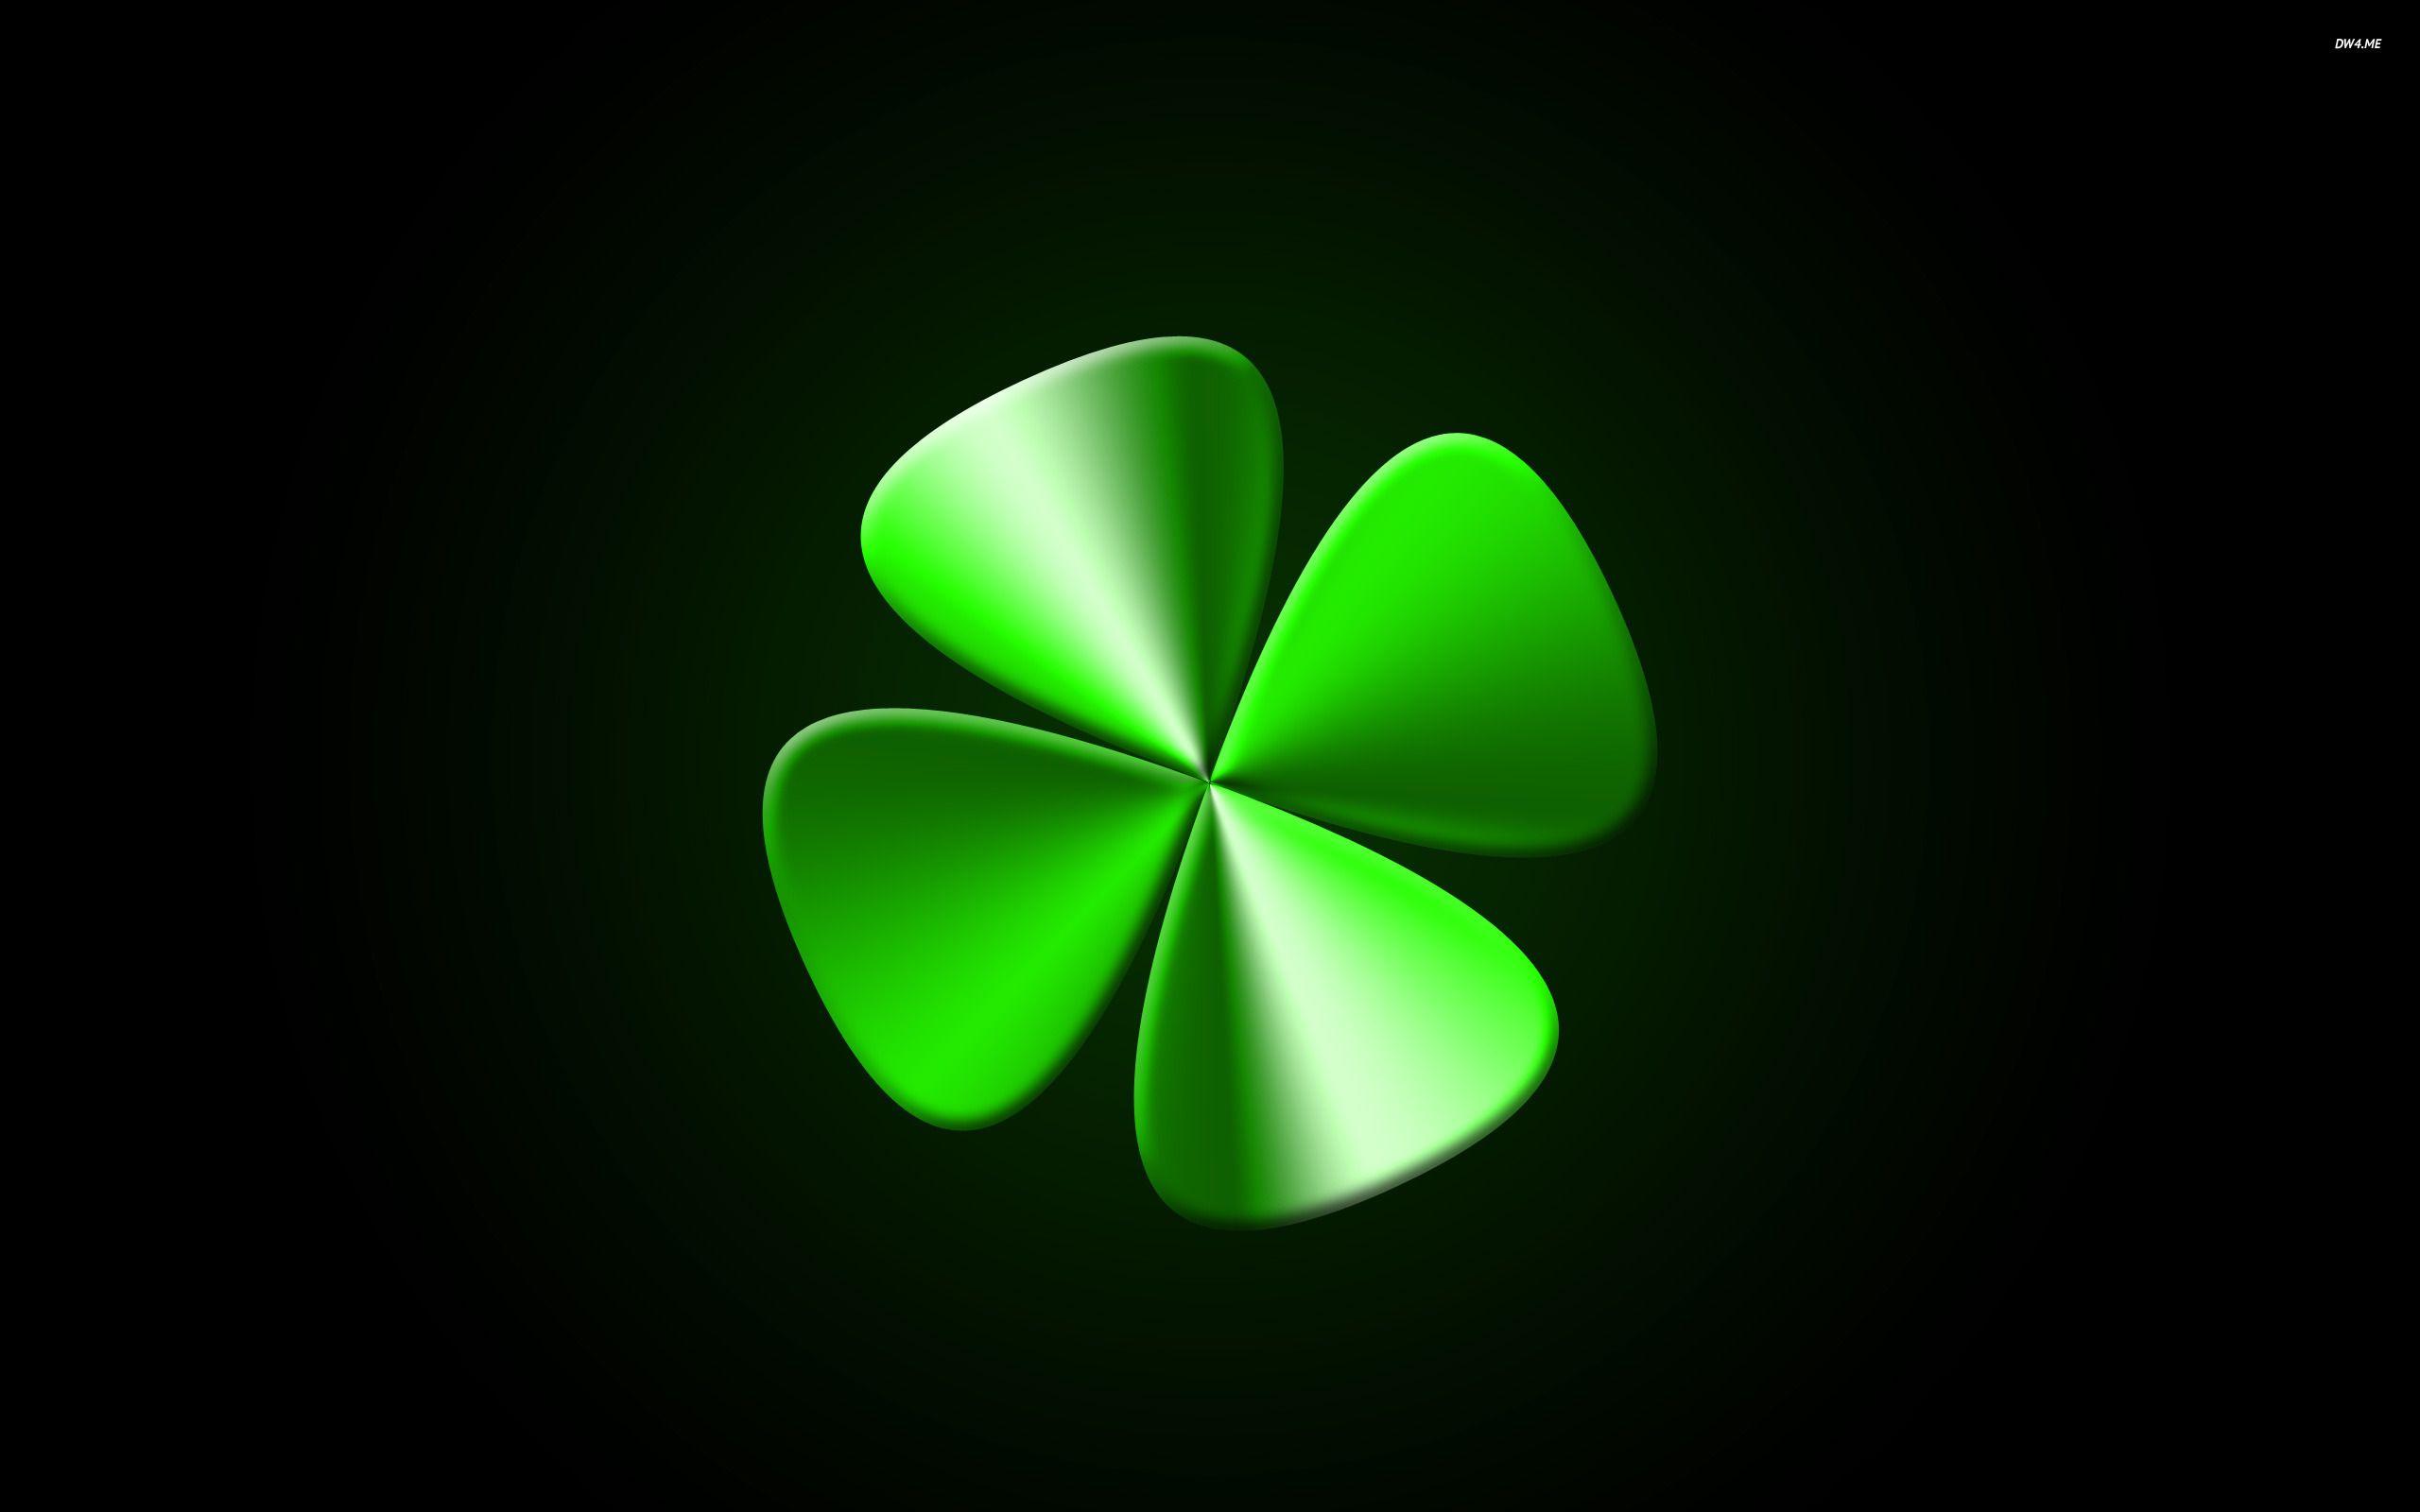 Четырехлистный клевер на заставку. Зеленый Клевер четырехлистный. Четырёхлистный Клевер на удачу. Ирландия Клевер четырехлистный. Четырёхлистный Клевер символ успеха.